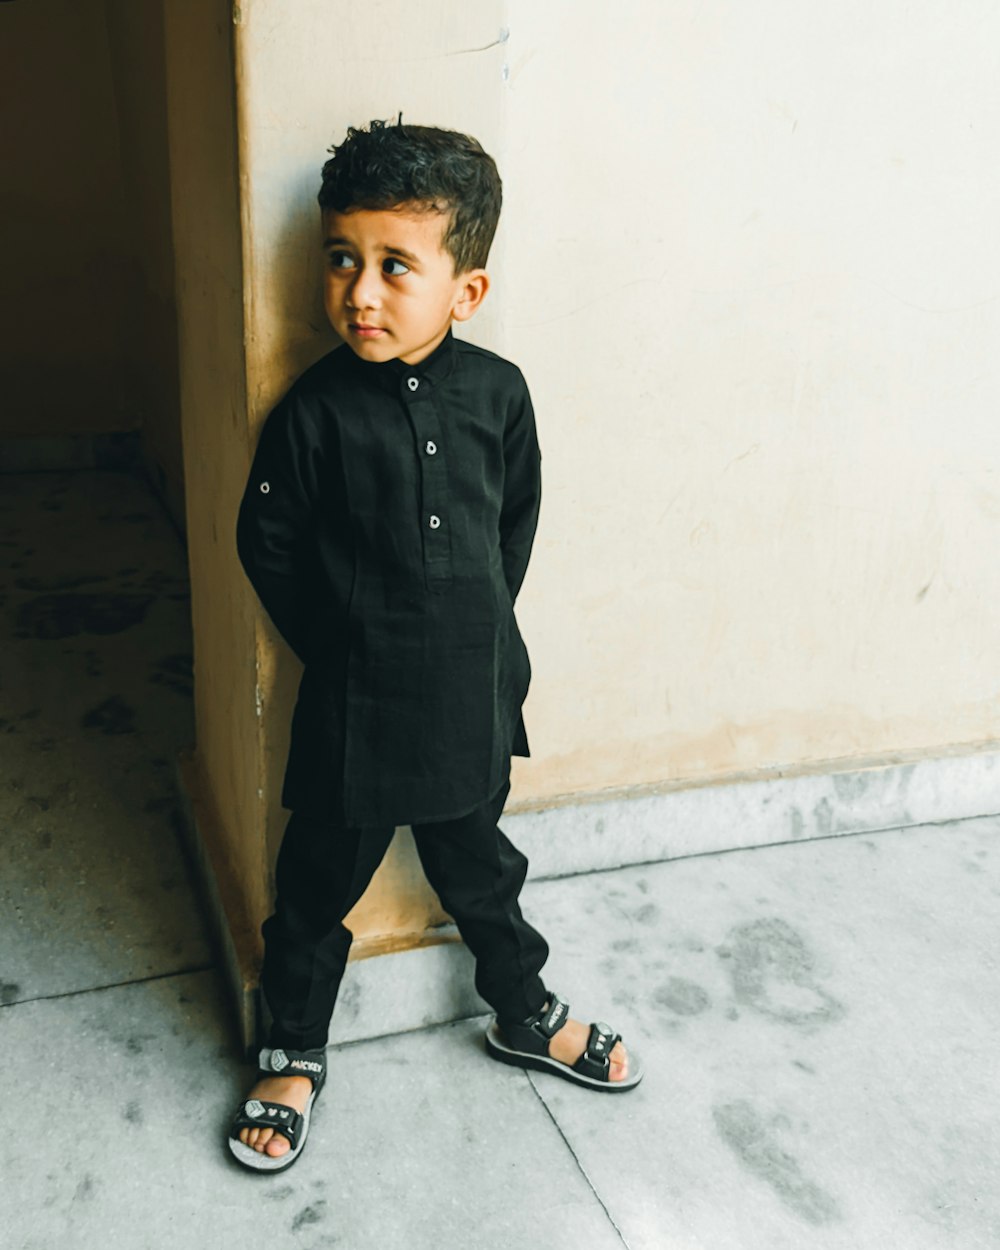 a little boy standing next to a wall